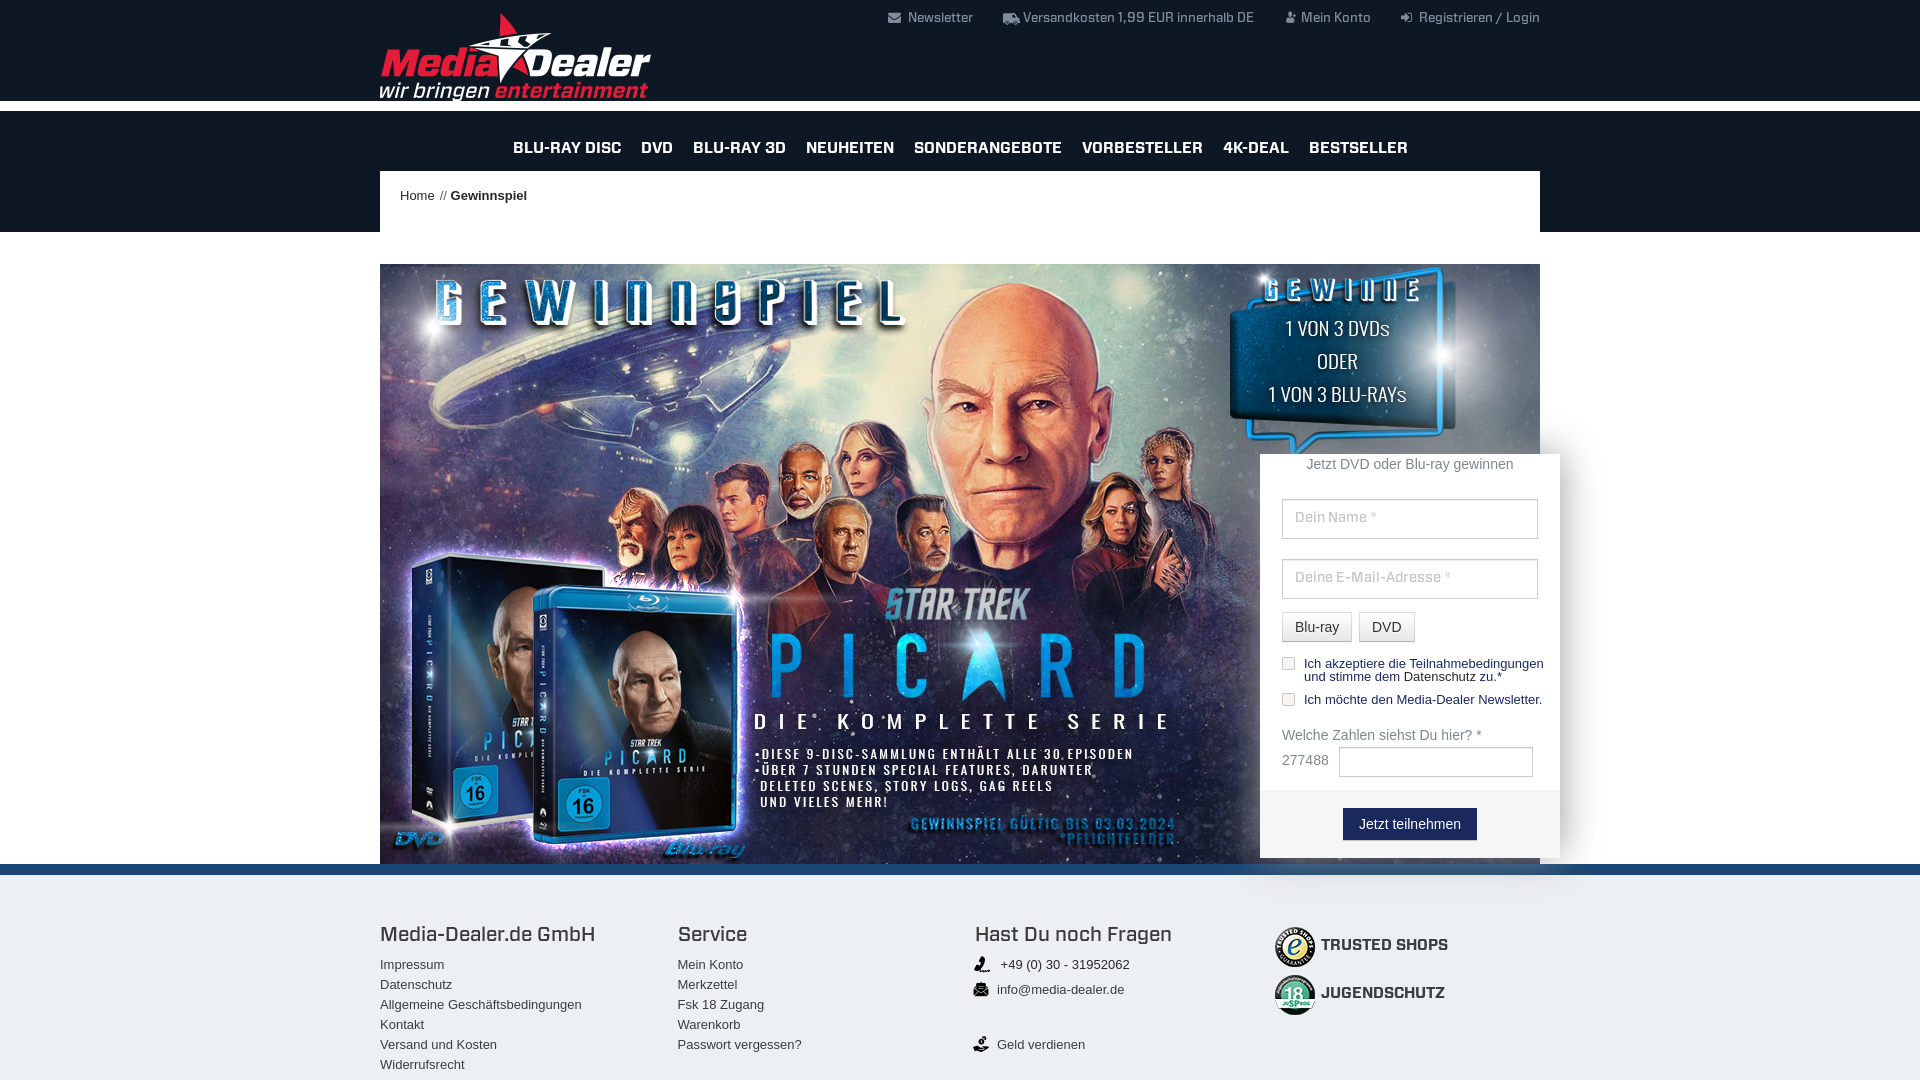 Star Trek Picard die gesamte Serie